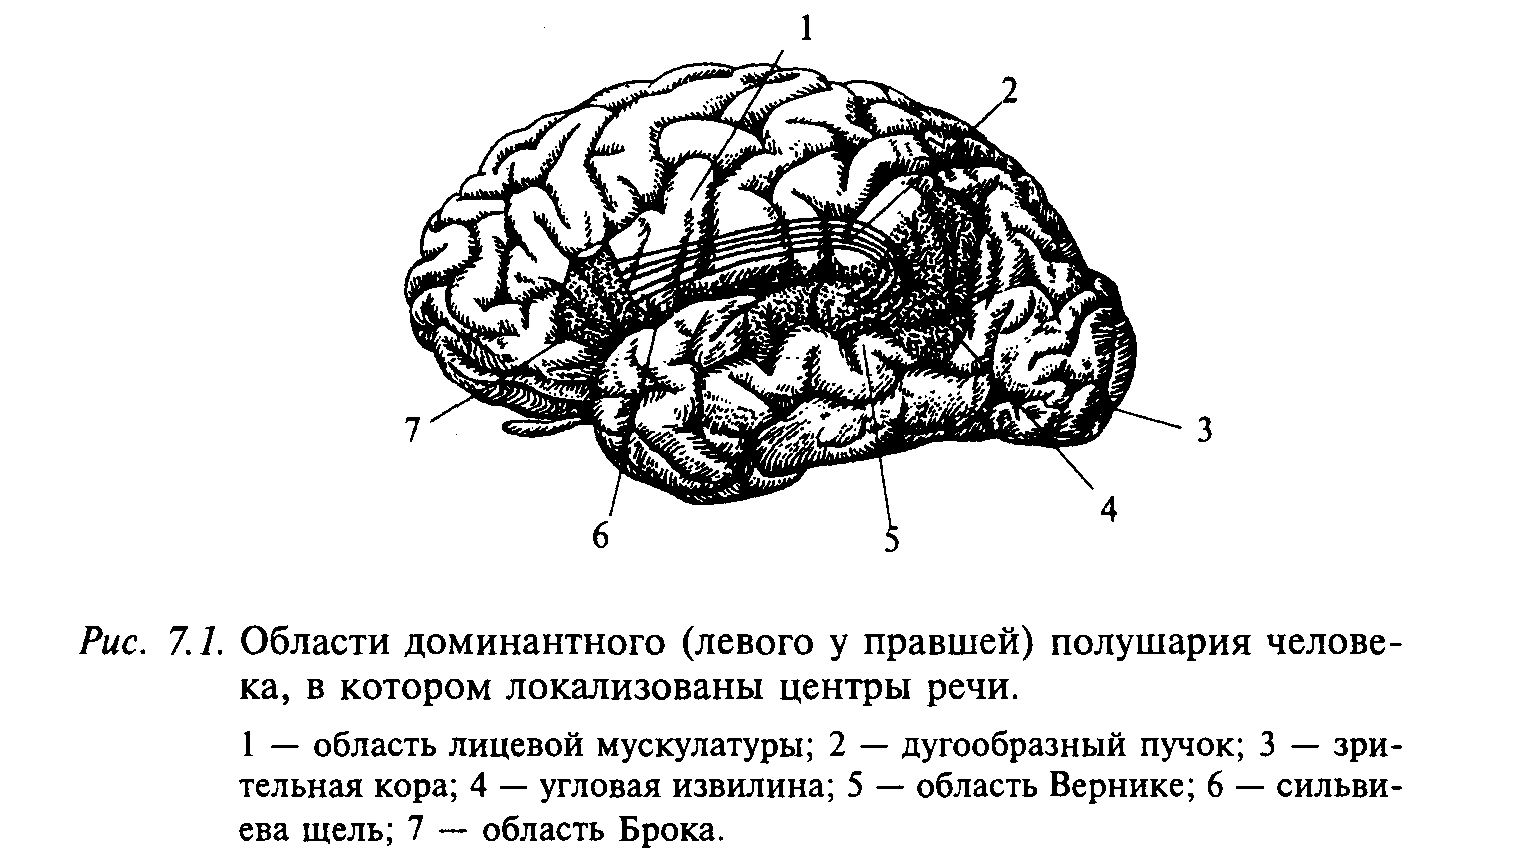 Левая гемисфера головного мозга. Речевые зоны коры левого полушария мозга у правшей. Речевые центры коры головного мозга нейрофизиология. Центры речи в коре левого полушария. Речевые зоны коры головного мозга Брока.